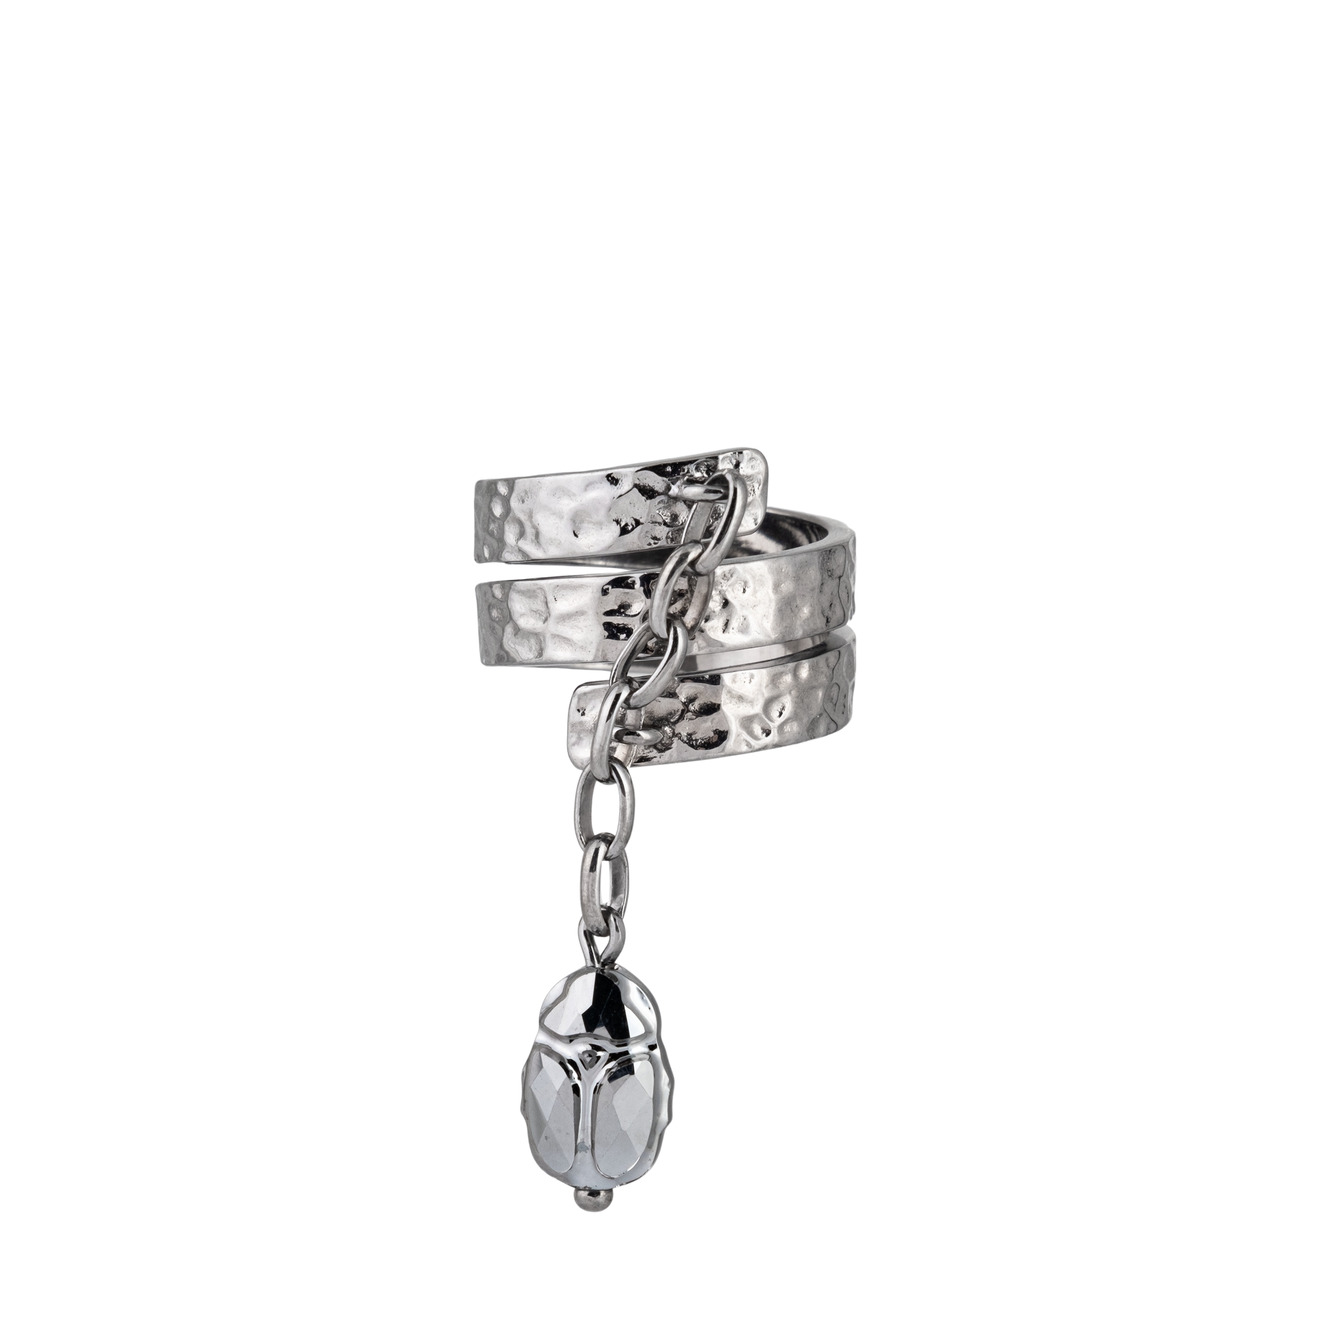 AMARIN Jewelry Кольцо Bugs black из серебра amarin jewelry светлое кольцо bugs из серебра